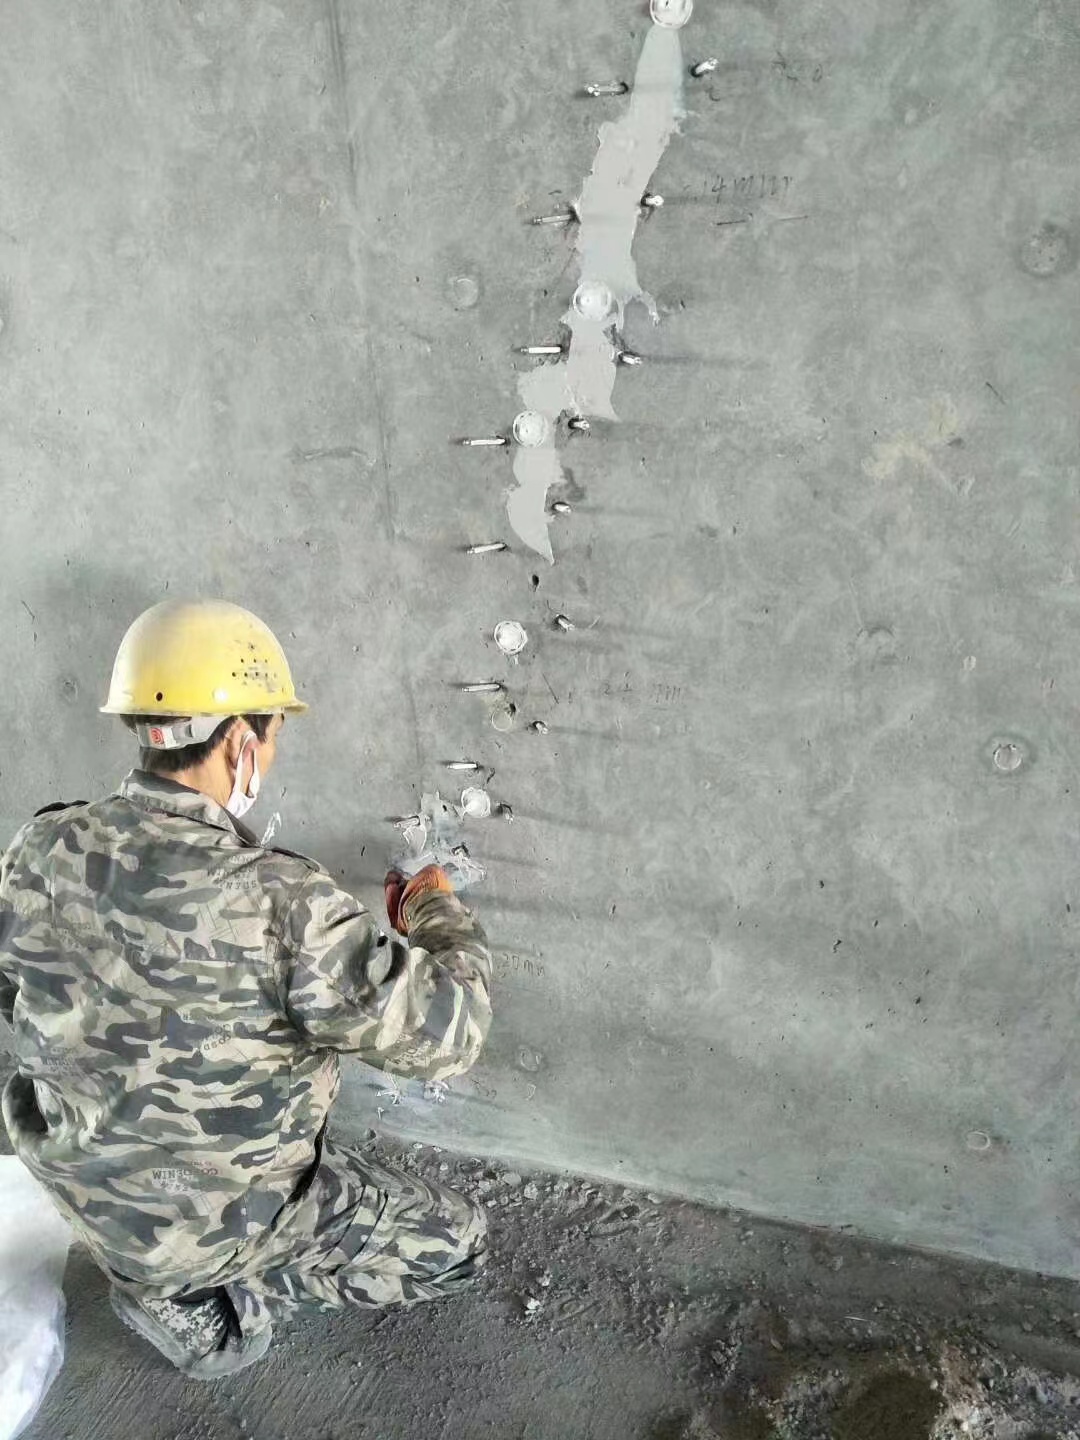 尼玛混凝土楼板裂缝加固施工的方案